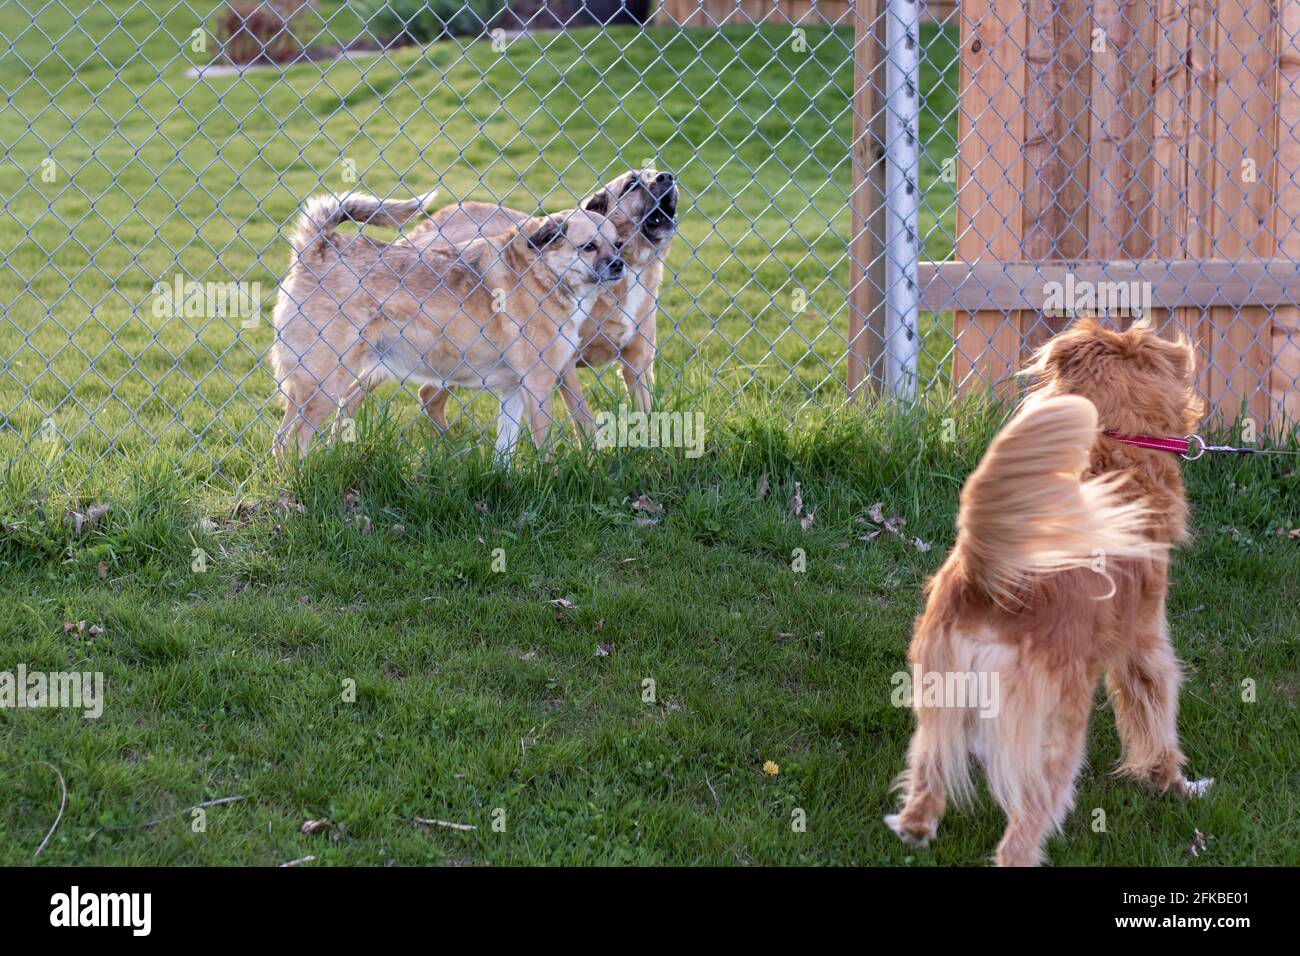 Zwei Hunde hinter einem Zaun, während ein anderer vorne, an der Leine, weggezogen wird. Einer der Hunde hinter dem Zaun bellt und der andere wütend. Stockfoto